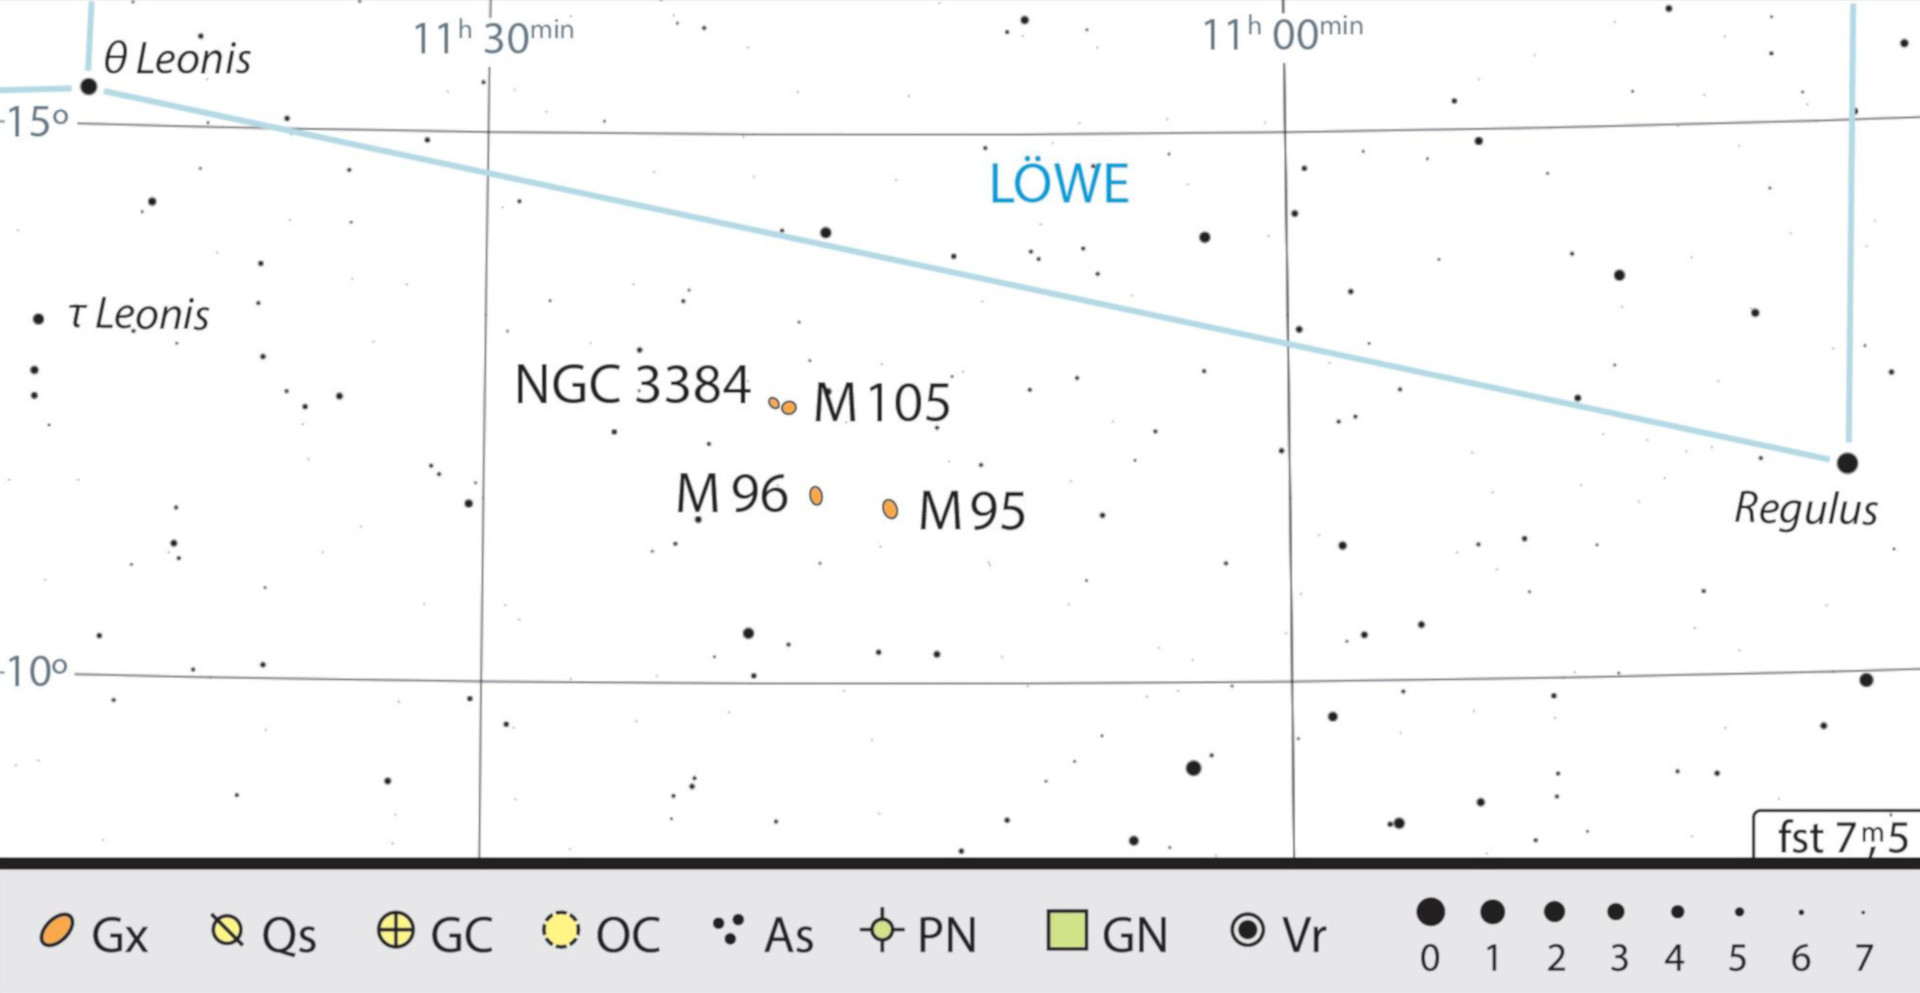 Oprócz M95 i M96 w bezpośrednim sąsiedztwie leżą inne galaktyki: M105 oraz NGC 3384. J. Scholten